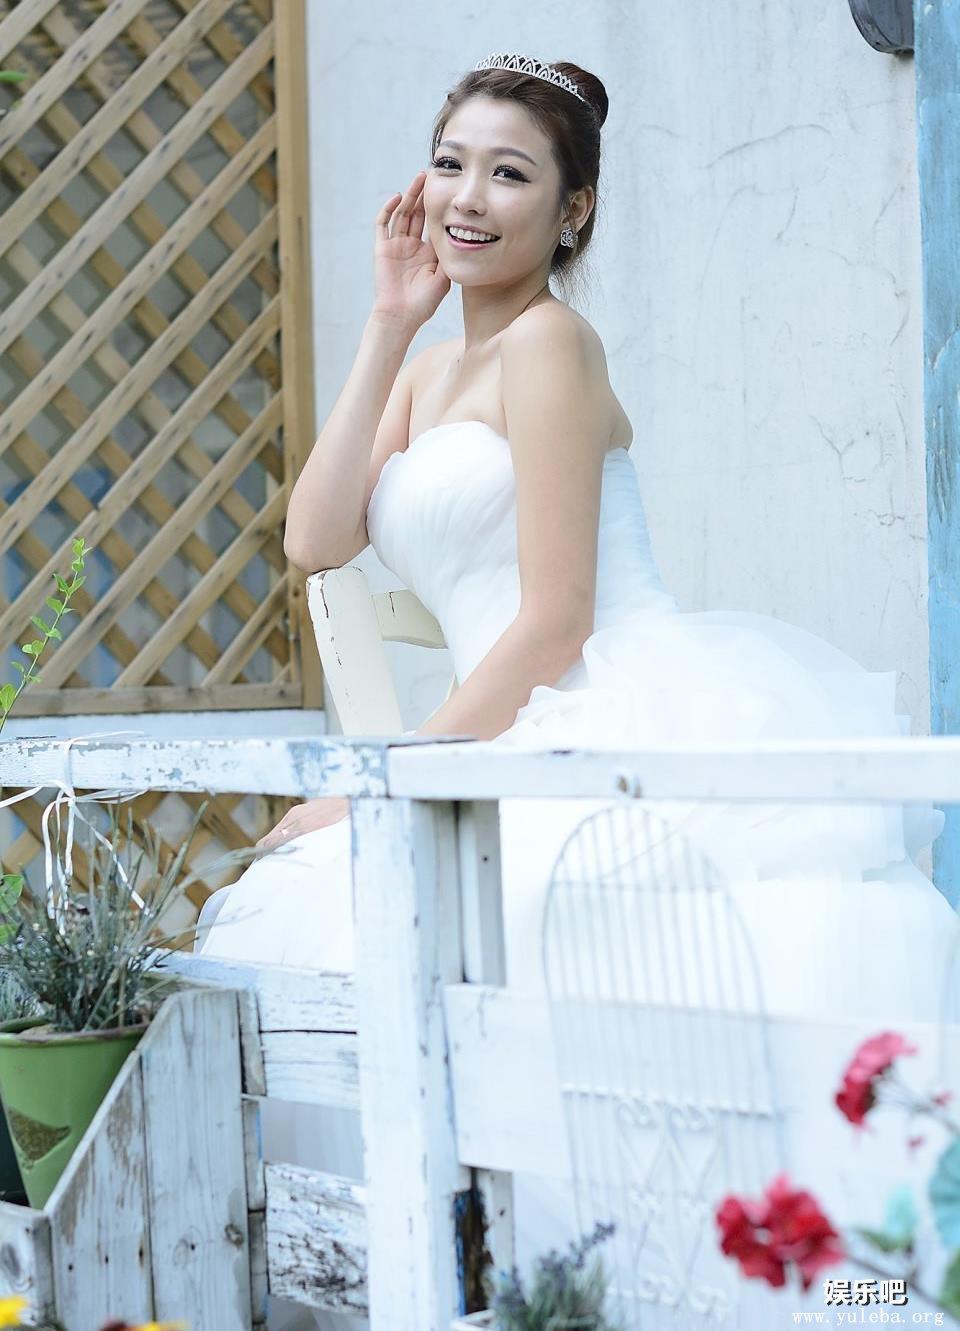 穿上婚纱的韩国美女李恩慧,穿上婚纱的韩国美女李恩慧